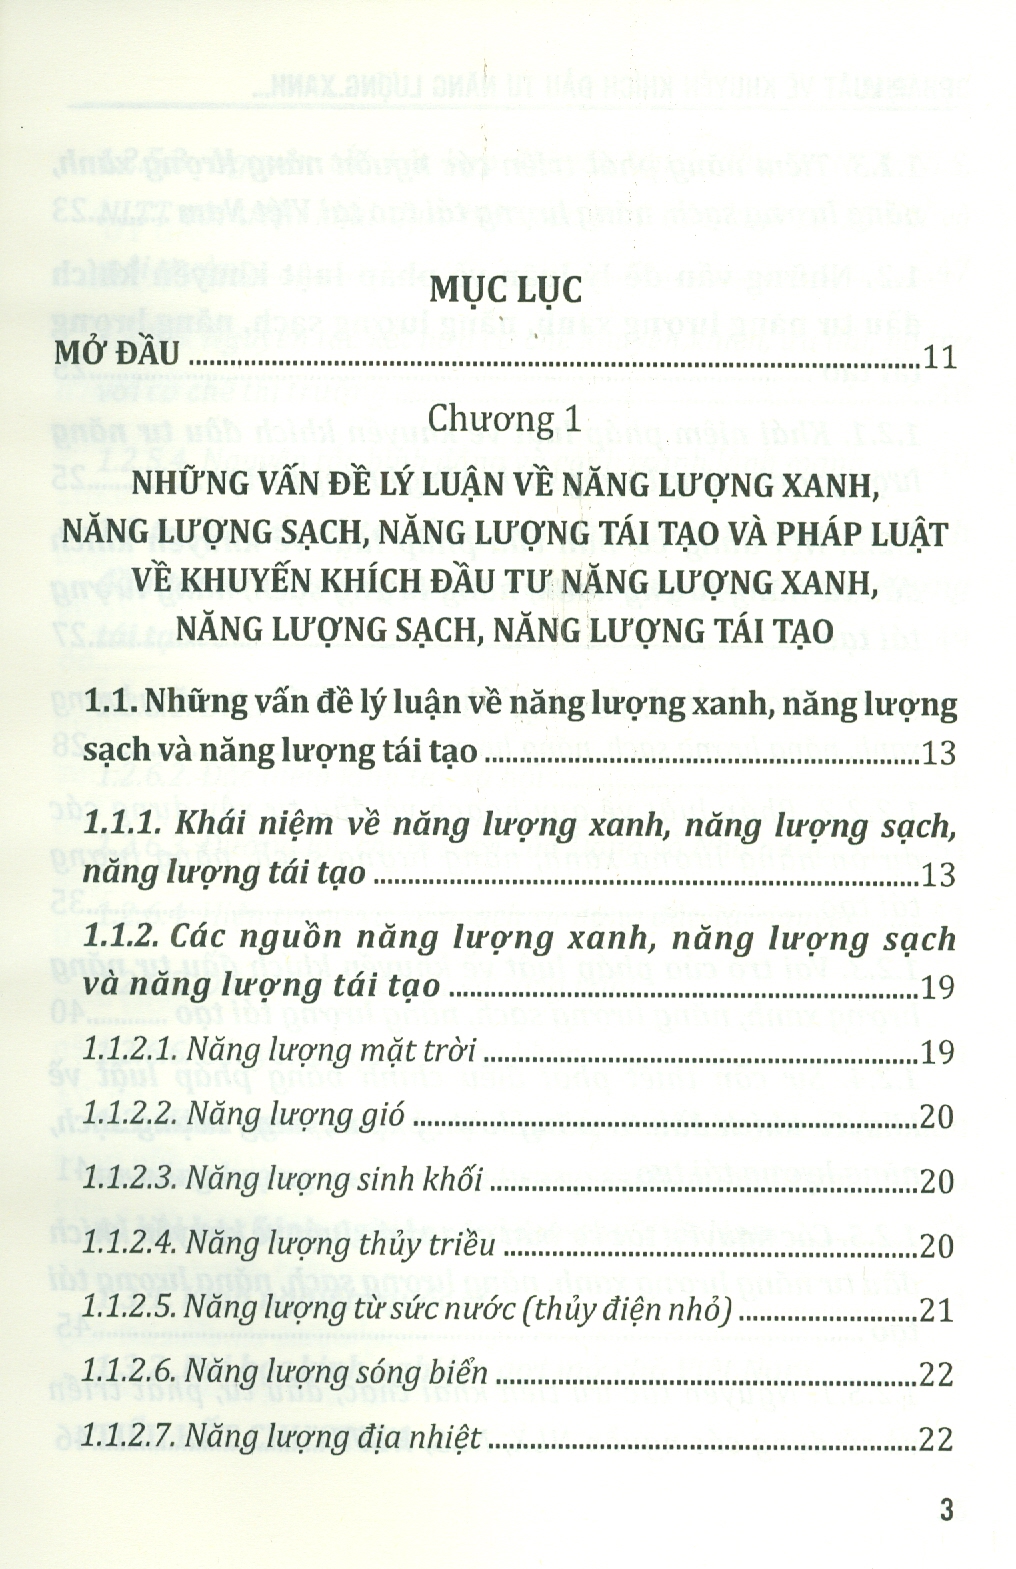 Pháp Luật Về Khuyến Khích Đầu Tư Năng Lượng Xanh, Năng Lượng Sạch, Năng Lượng Tái Tạo Ở Việt Nam